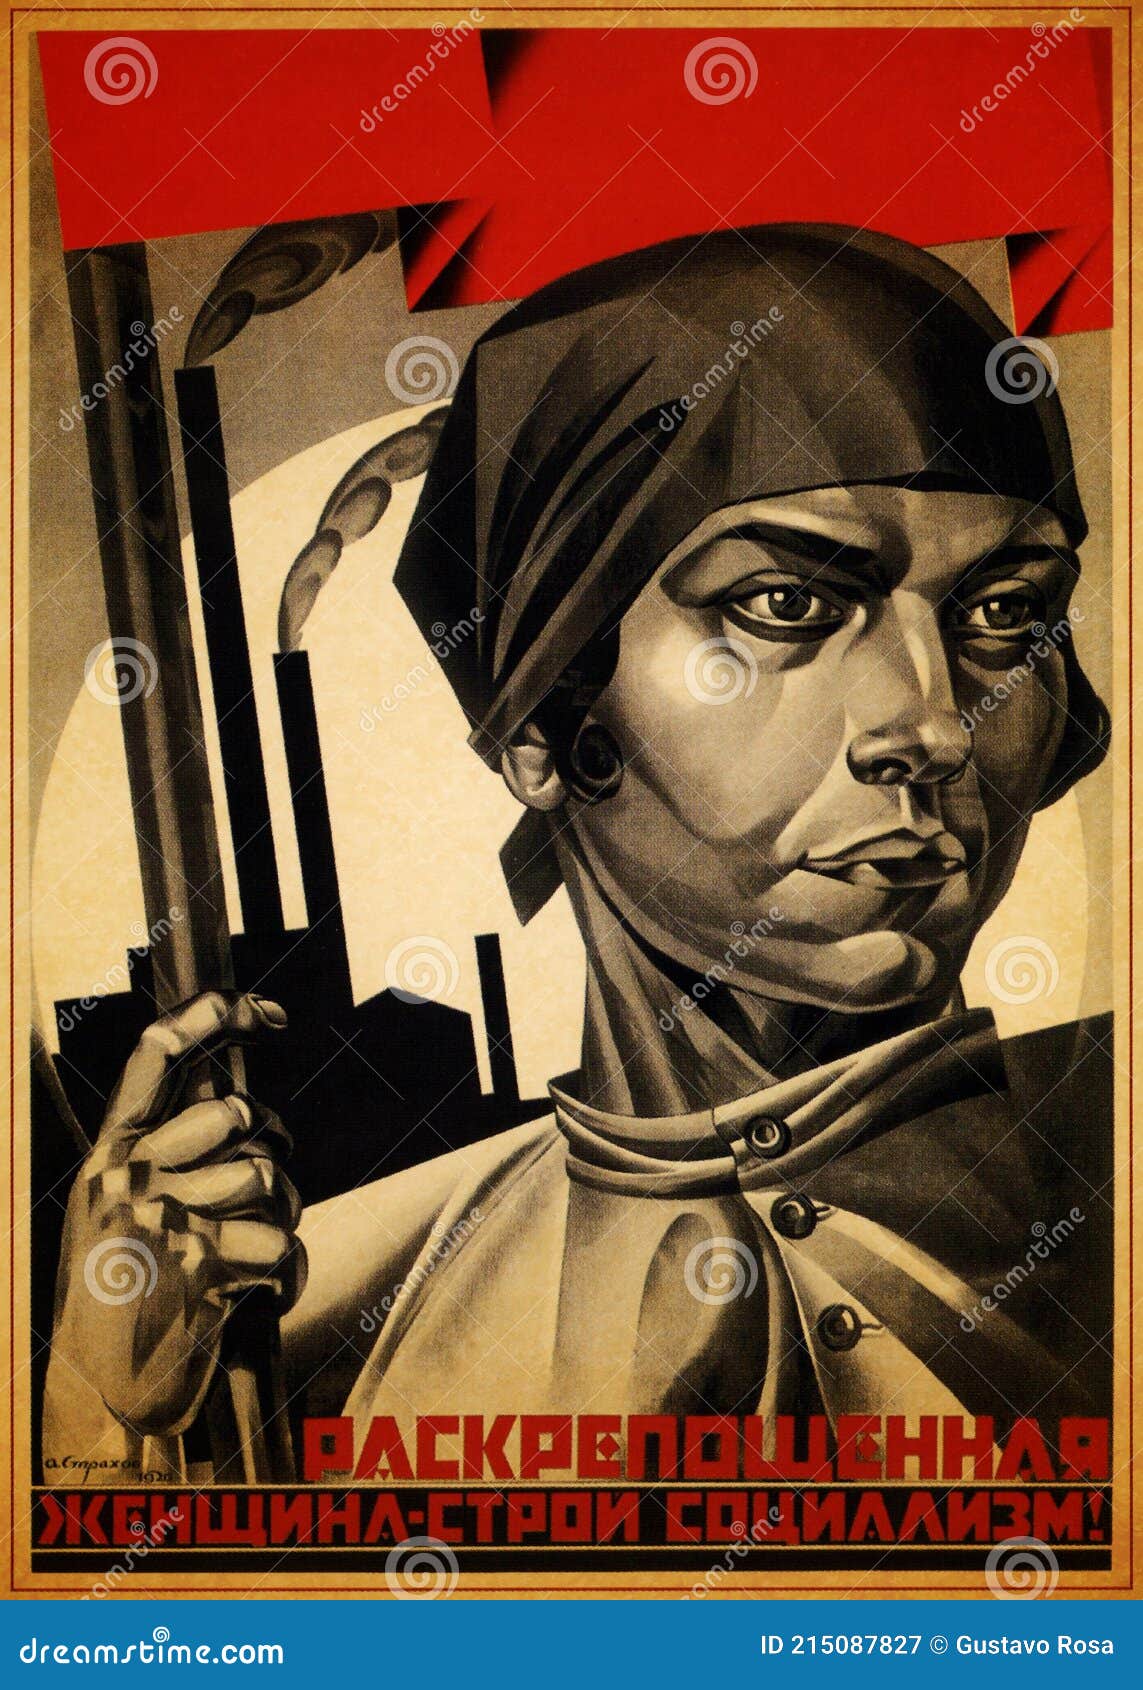 Mujer Cartel Soviético De La Segunda Guerra Mundial Y La Guerra Fría.  Propaganda De La Urss. Fotografía editorial - Imagen de mezcla, nubes:  215087827